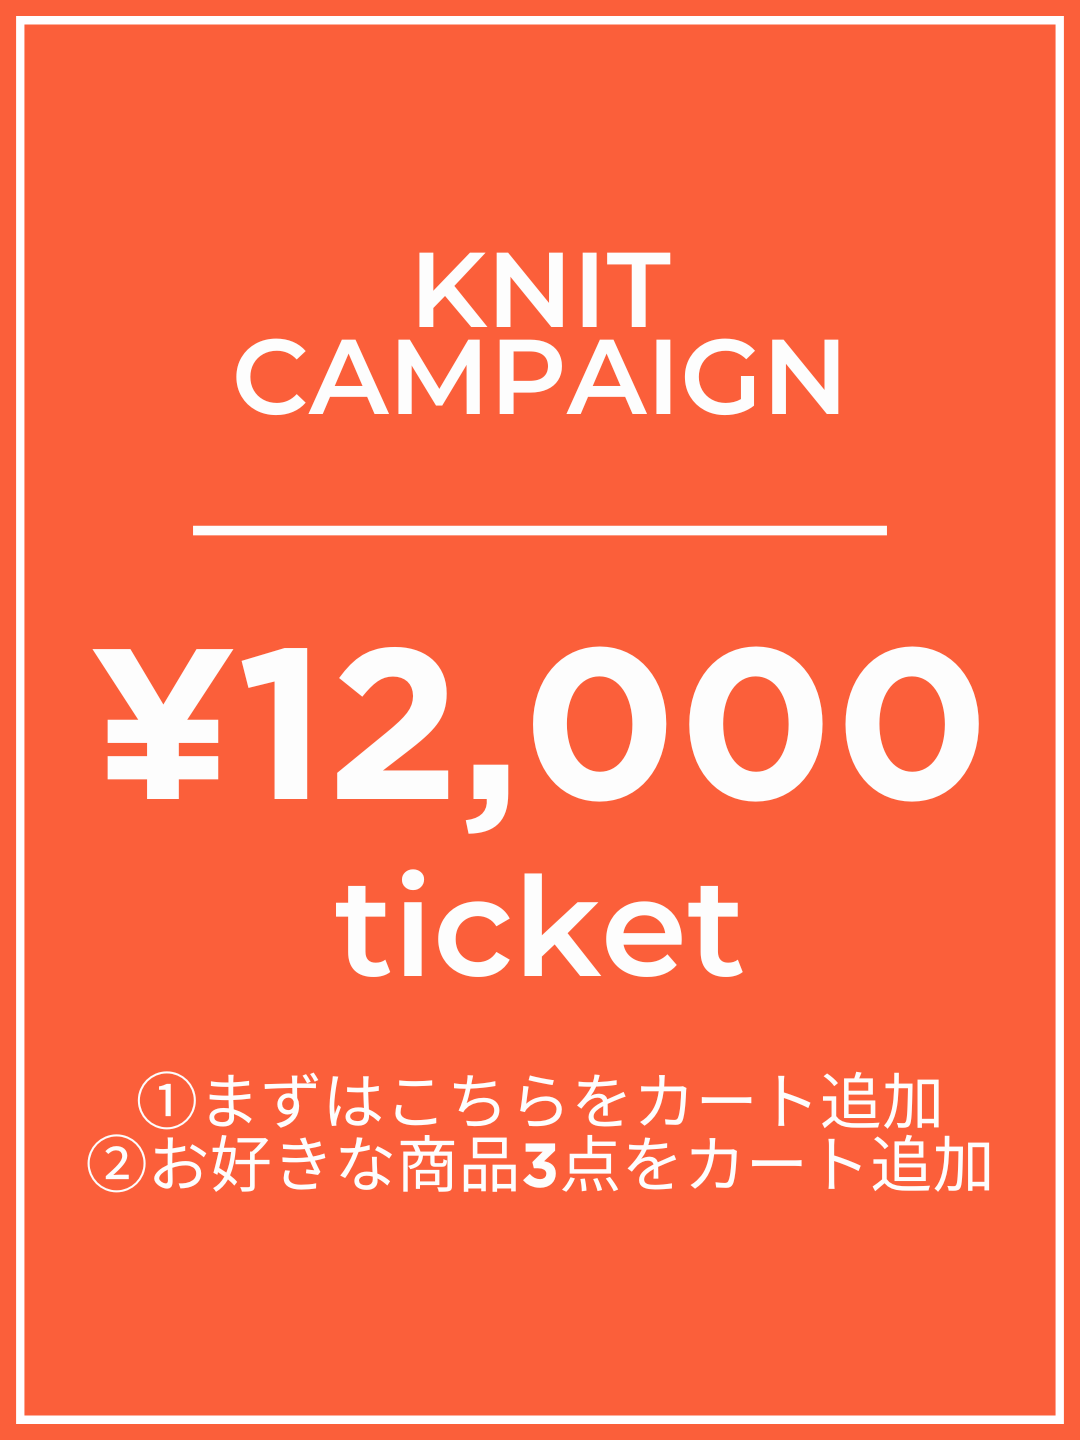 【1番初めにこちらをカートイン】¥12,000チケット